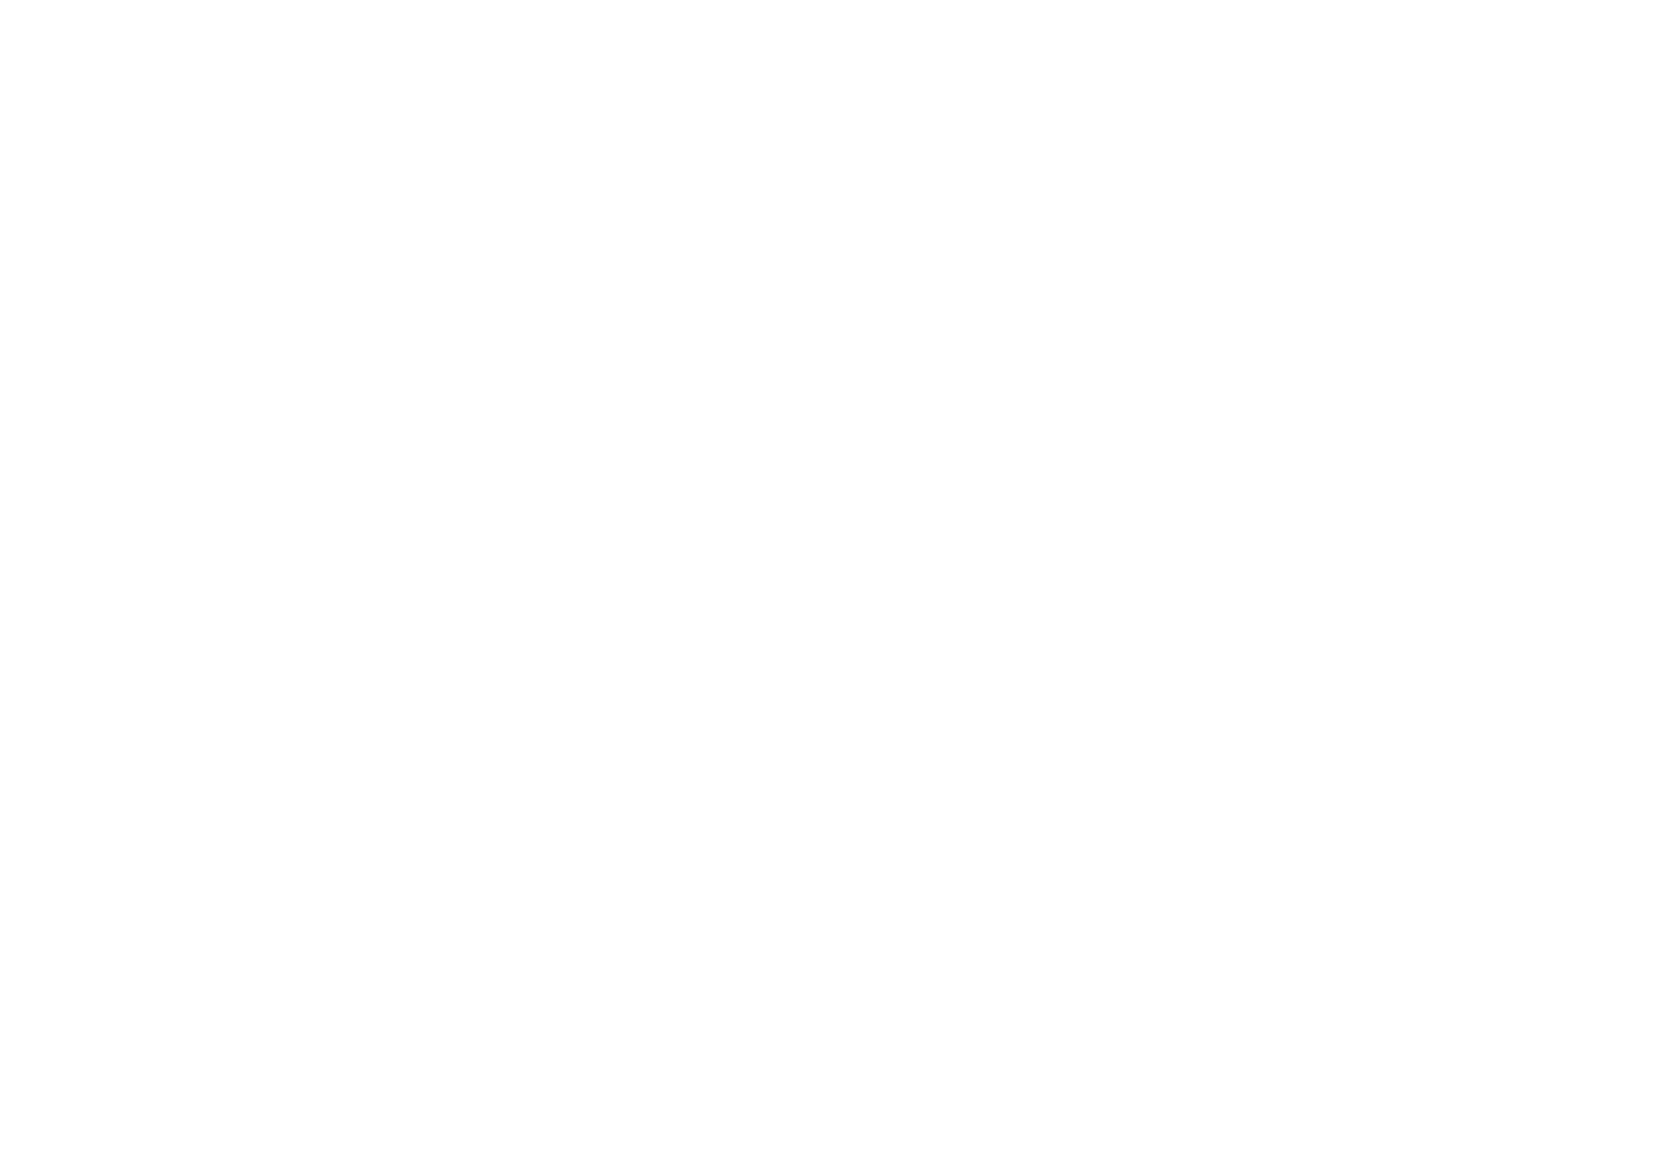 De blije merkontwikkelaar Vrije school liederen logo